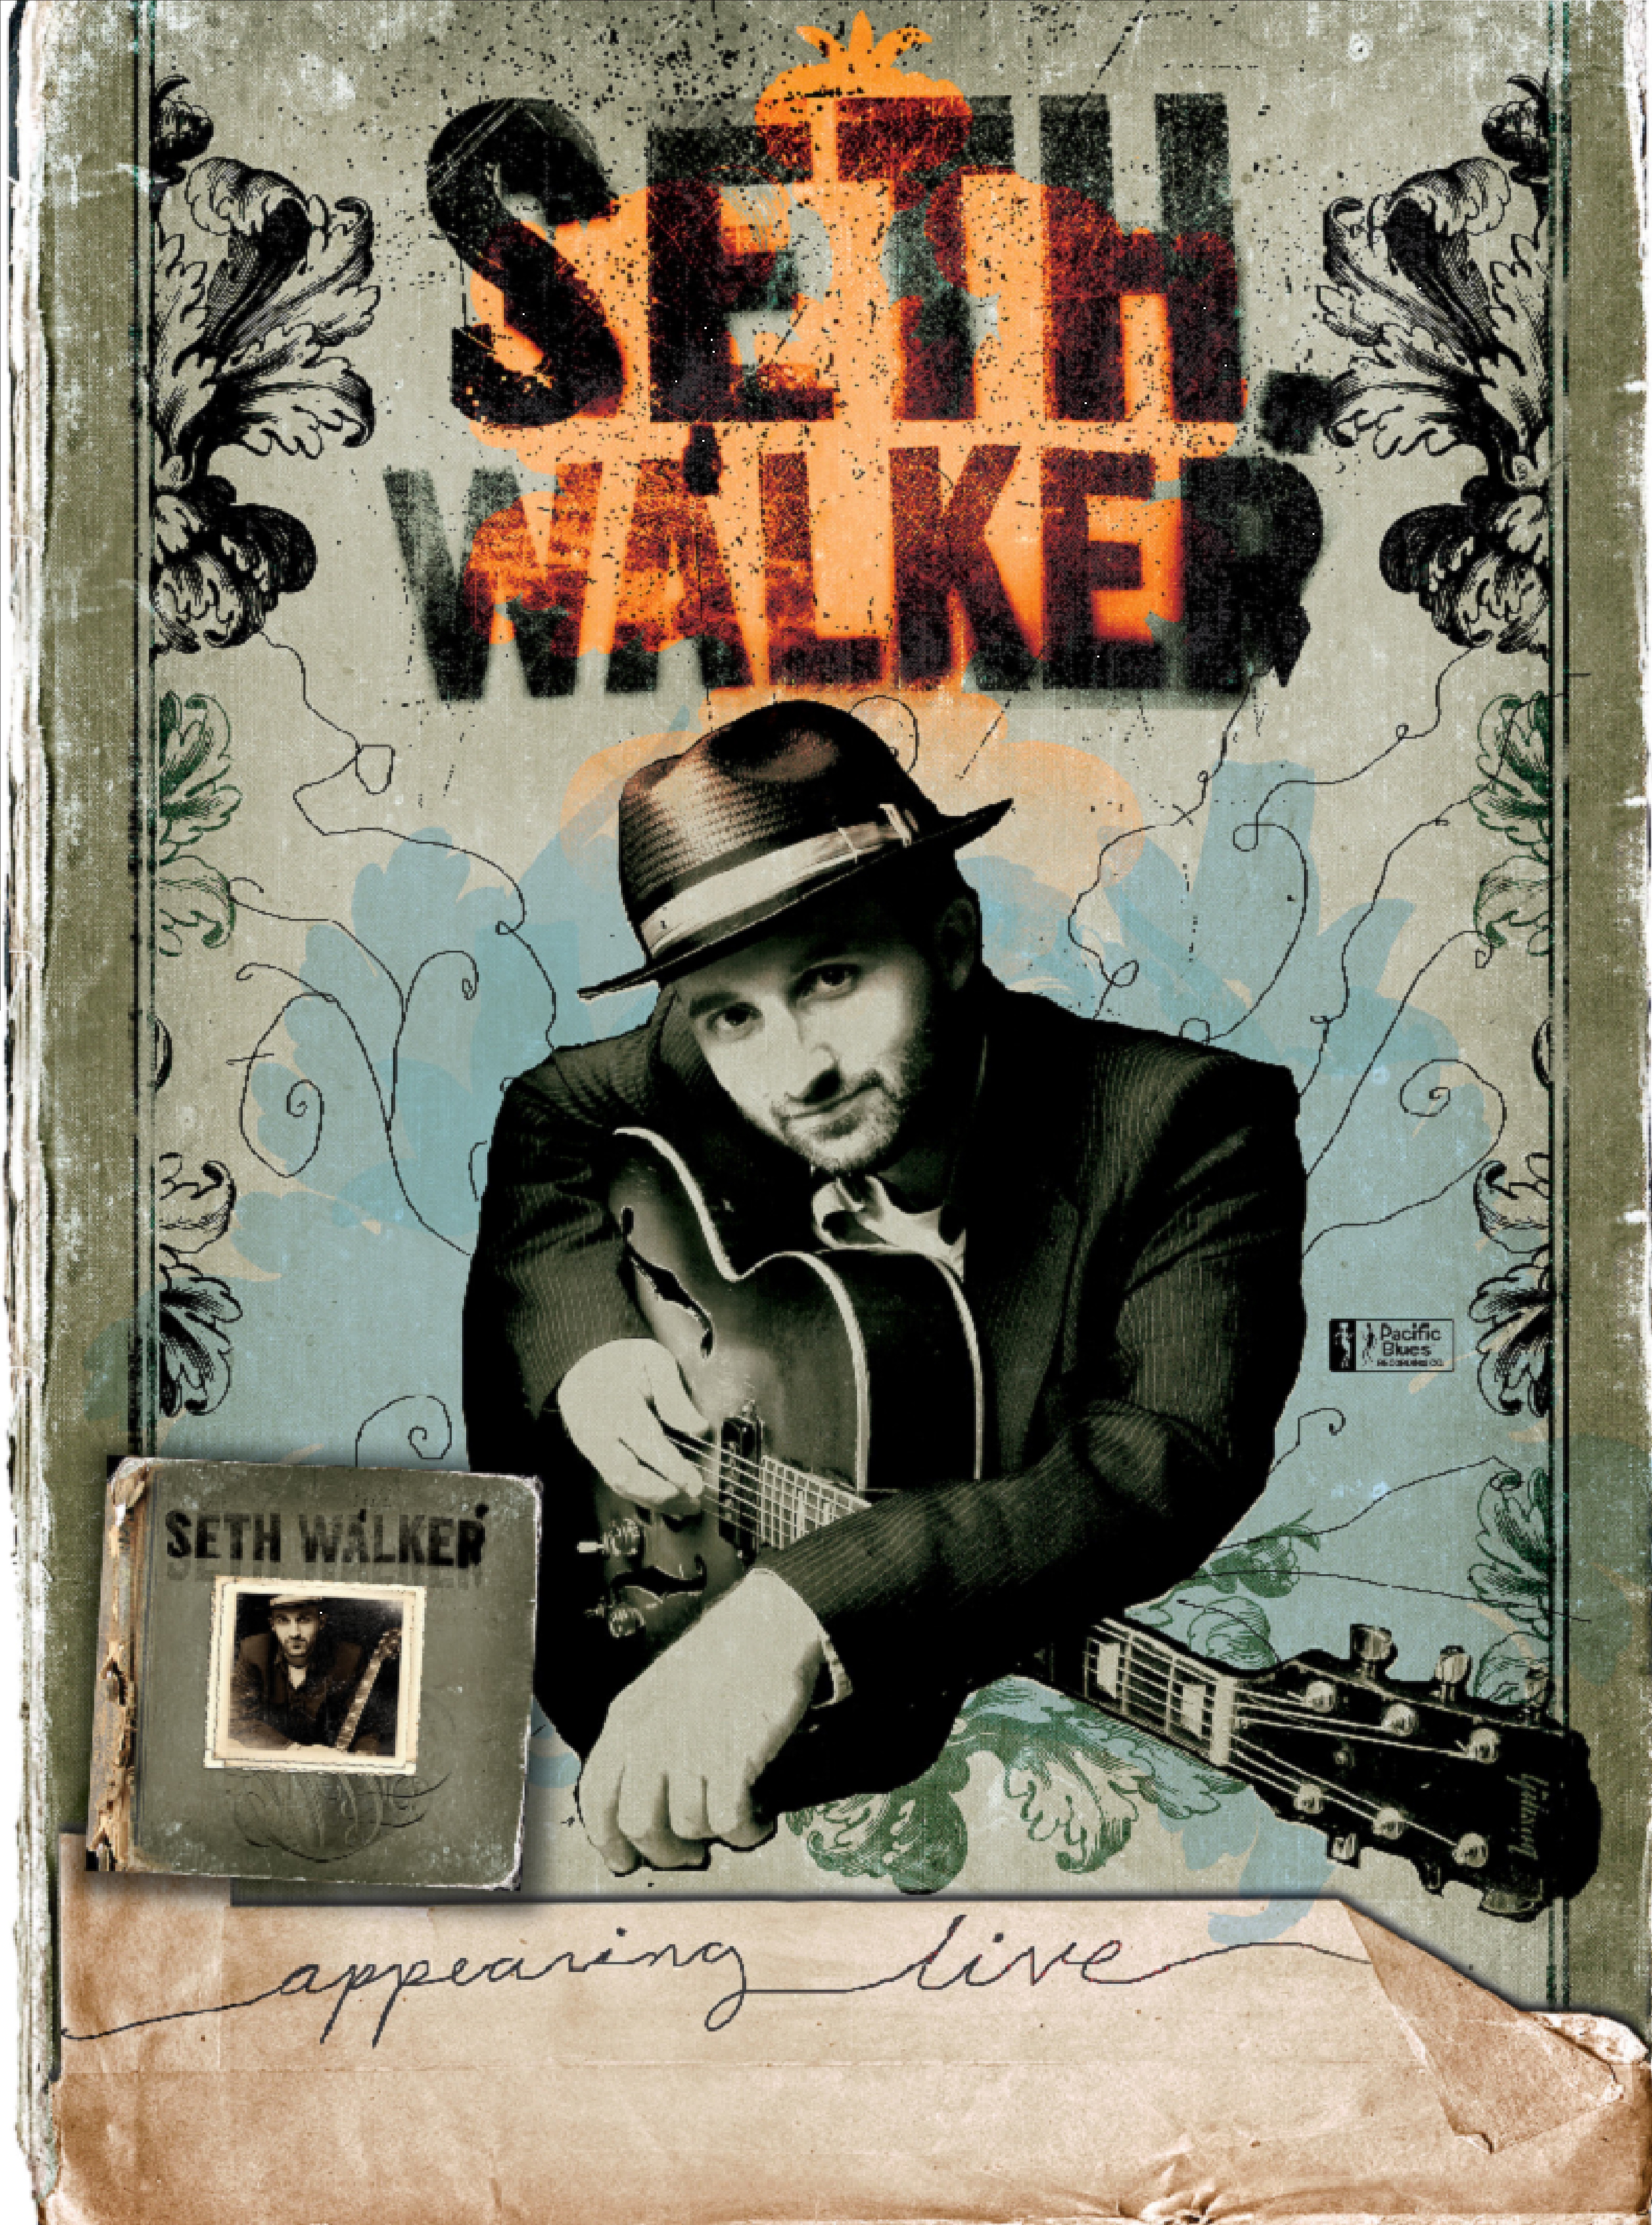 Seth Walker (USA/DK)